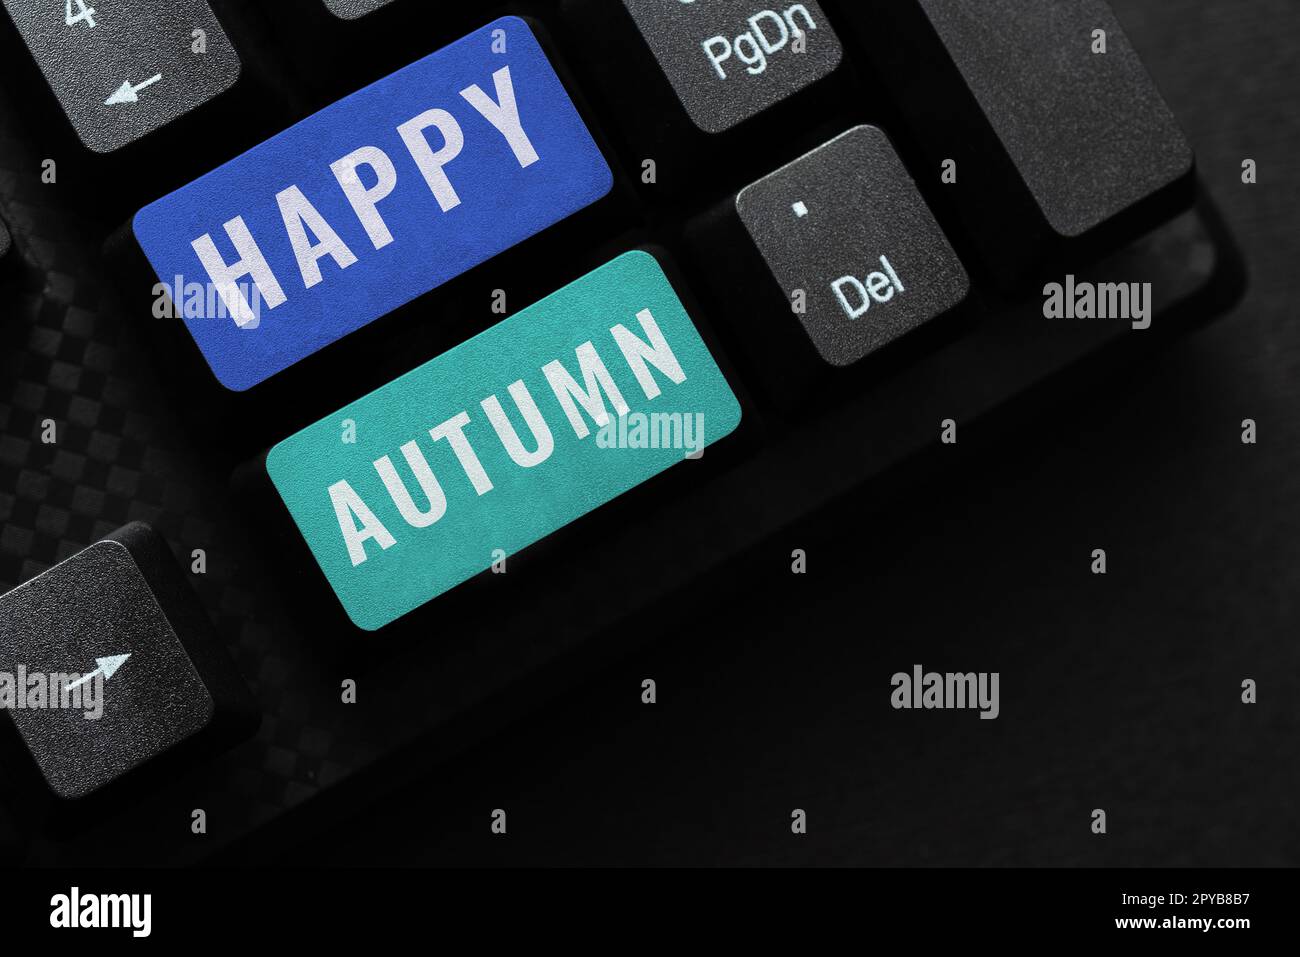 Affiche manuscrite Happy Autumn. Concept signification commémoration spéciale annuelle Banque D'Images